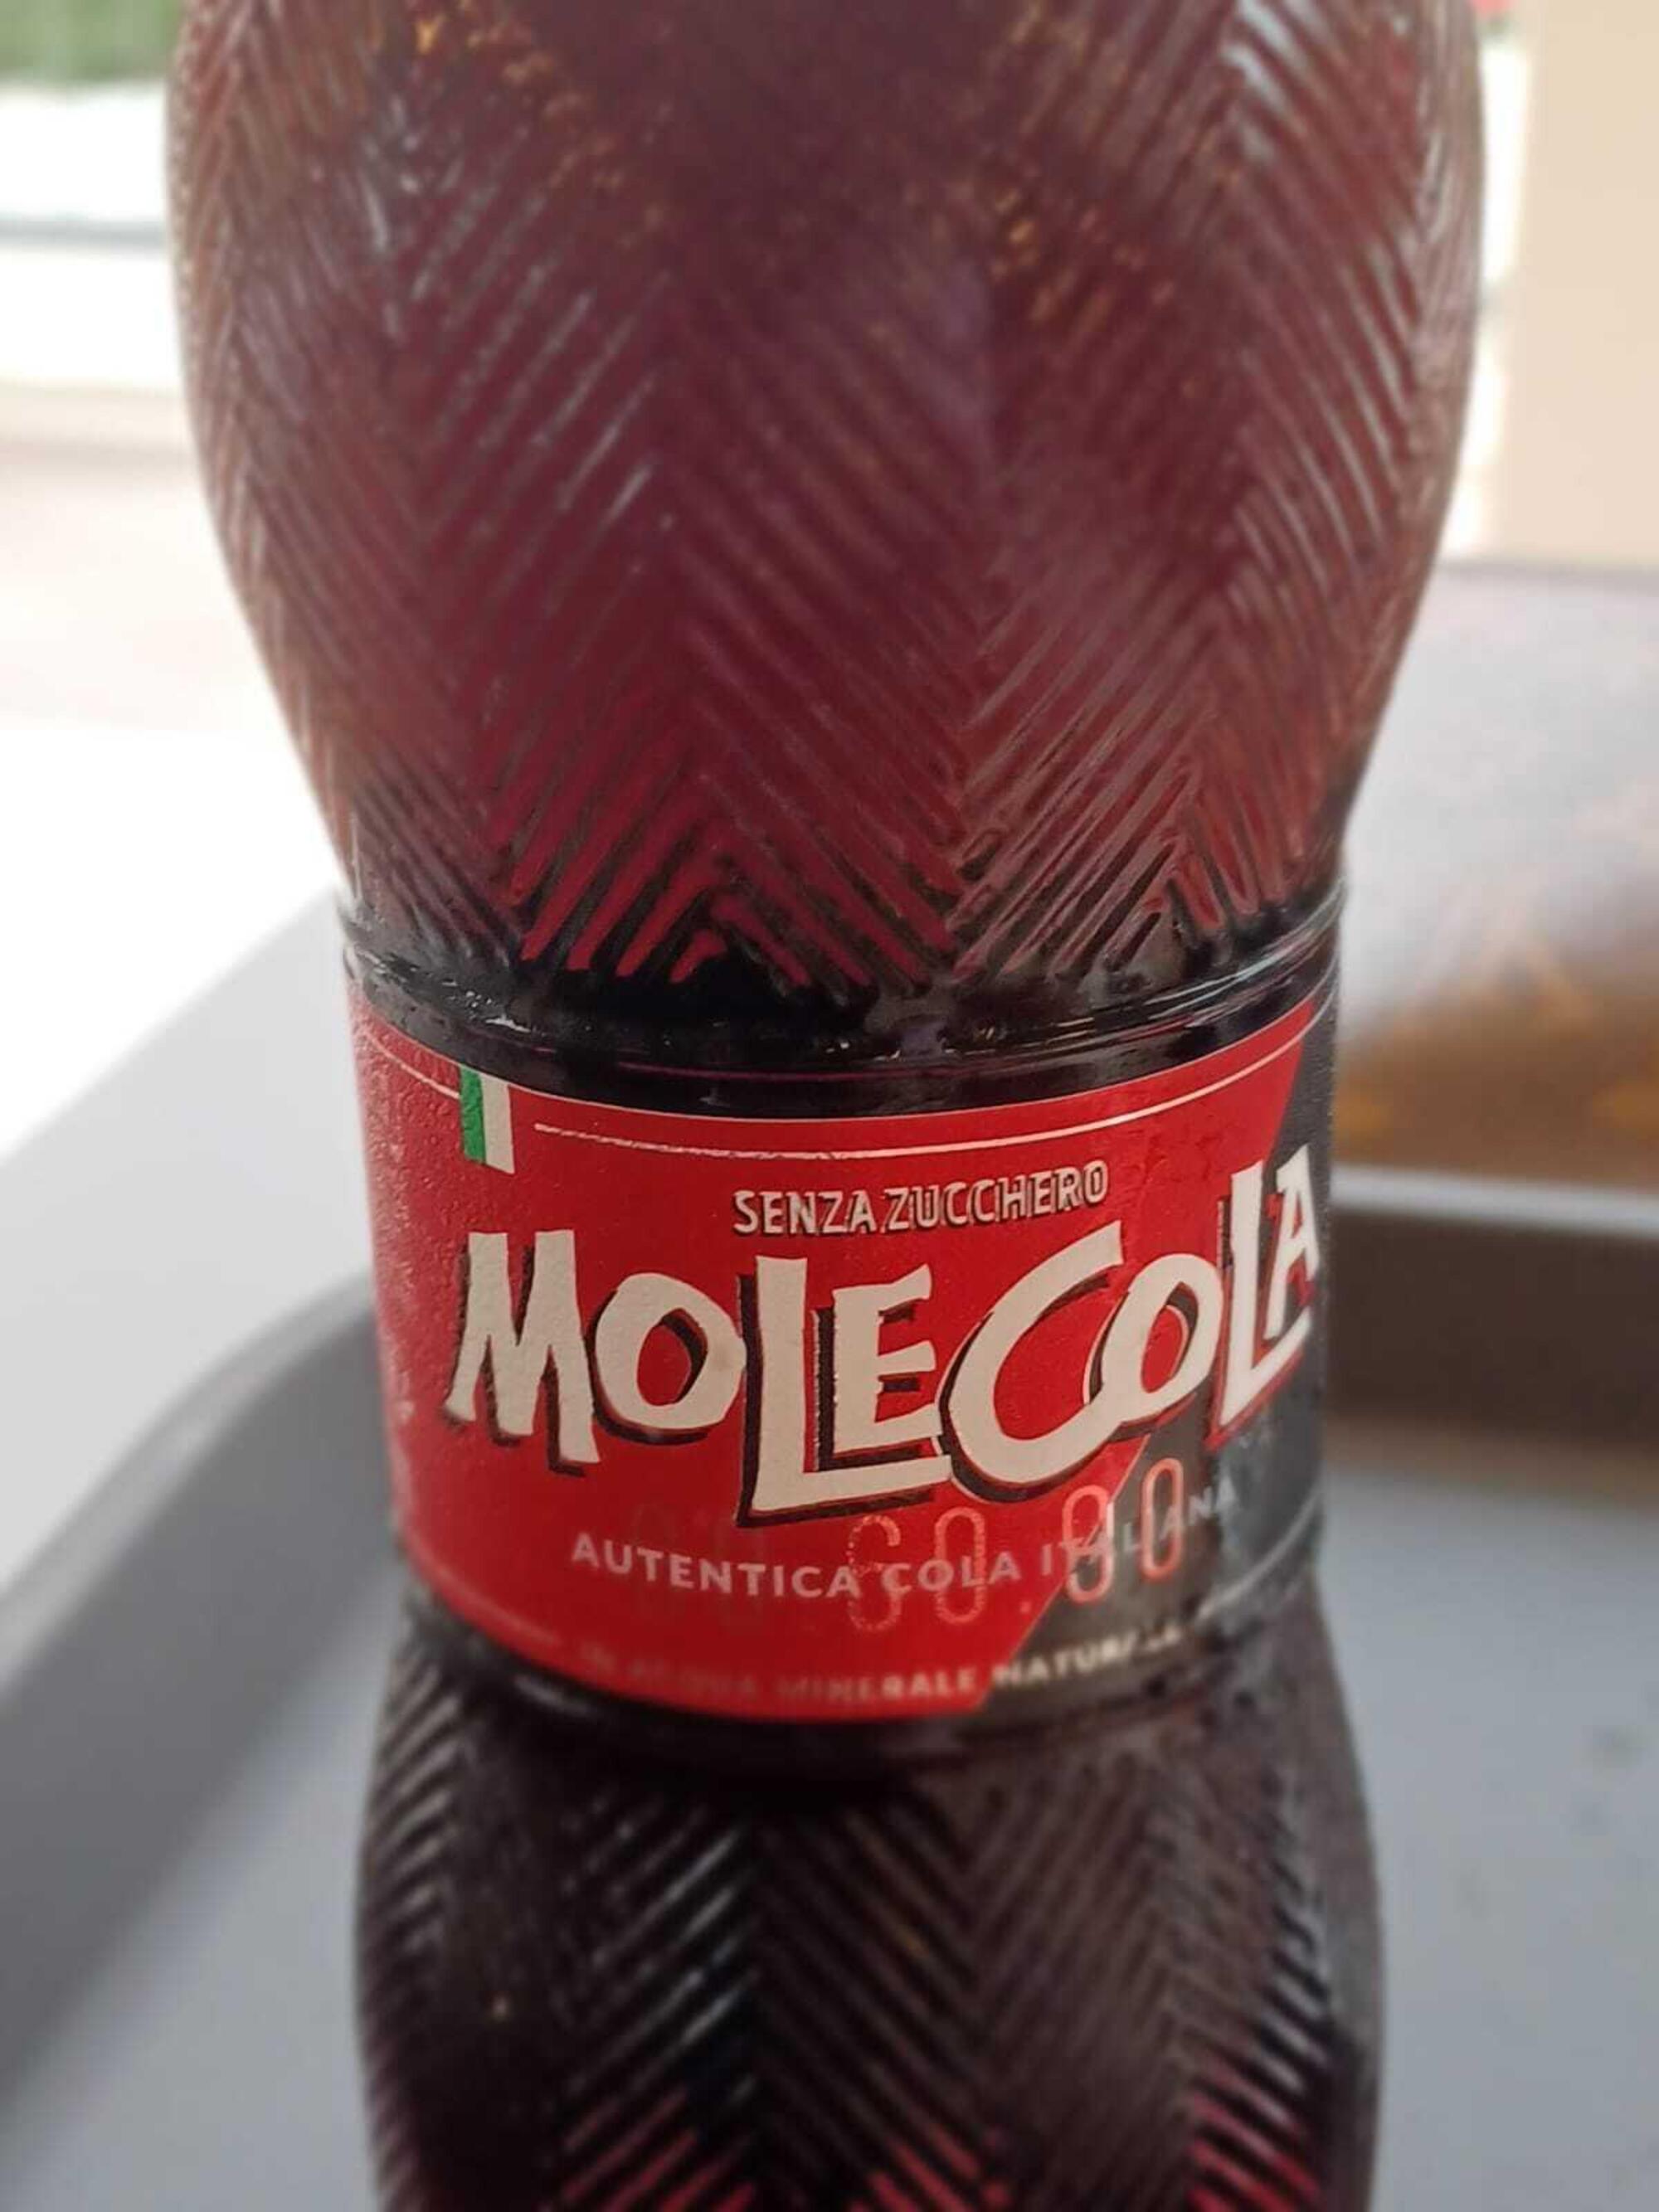 La Molecola, risposta italica (non del tutto convincente) alla Coca Cola